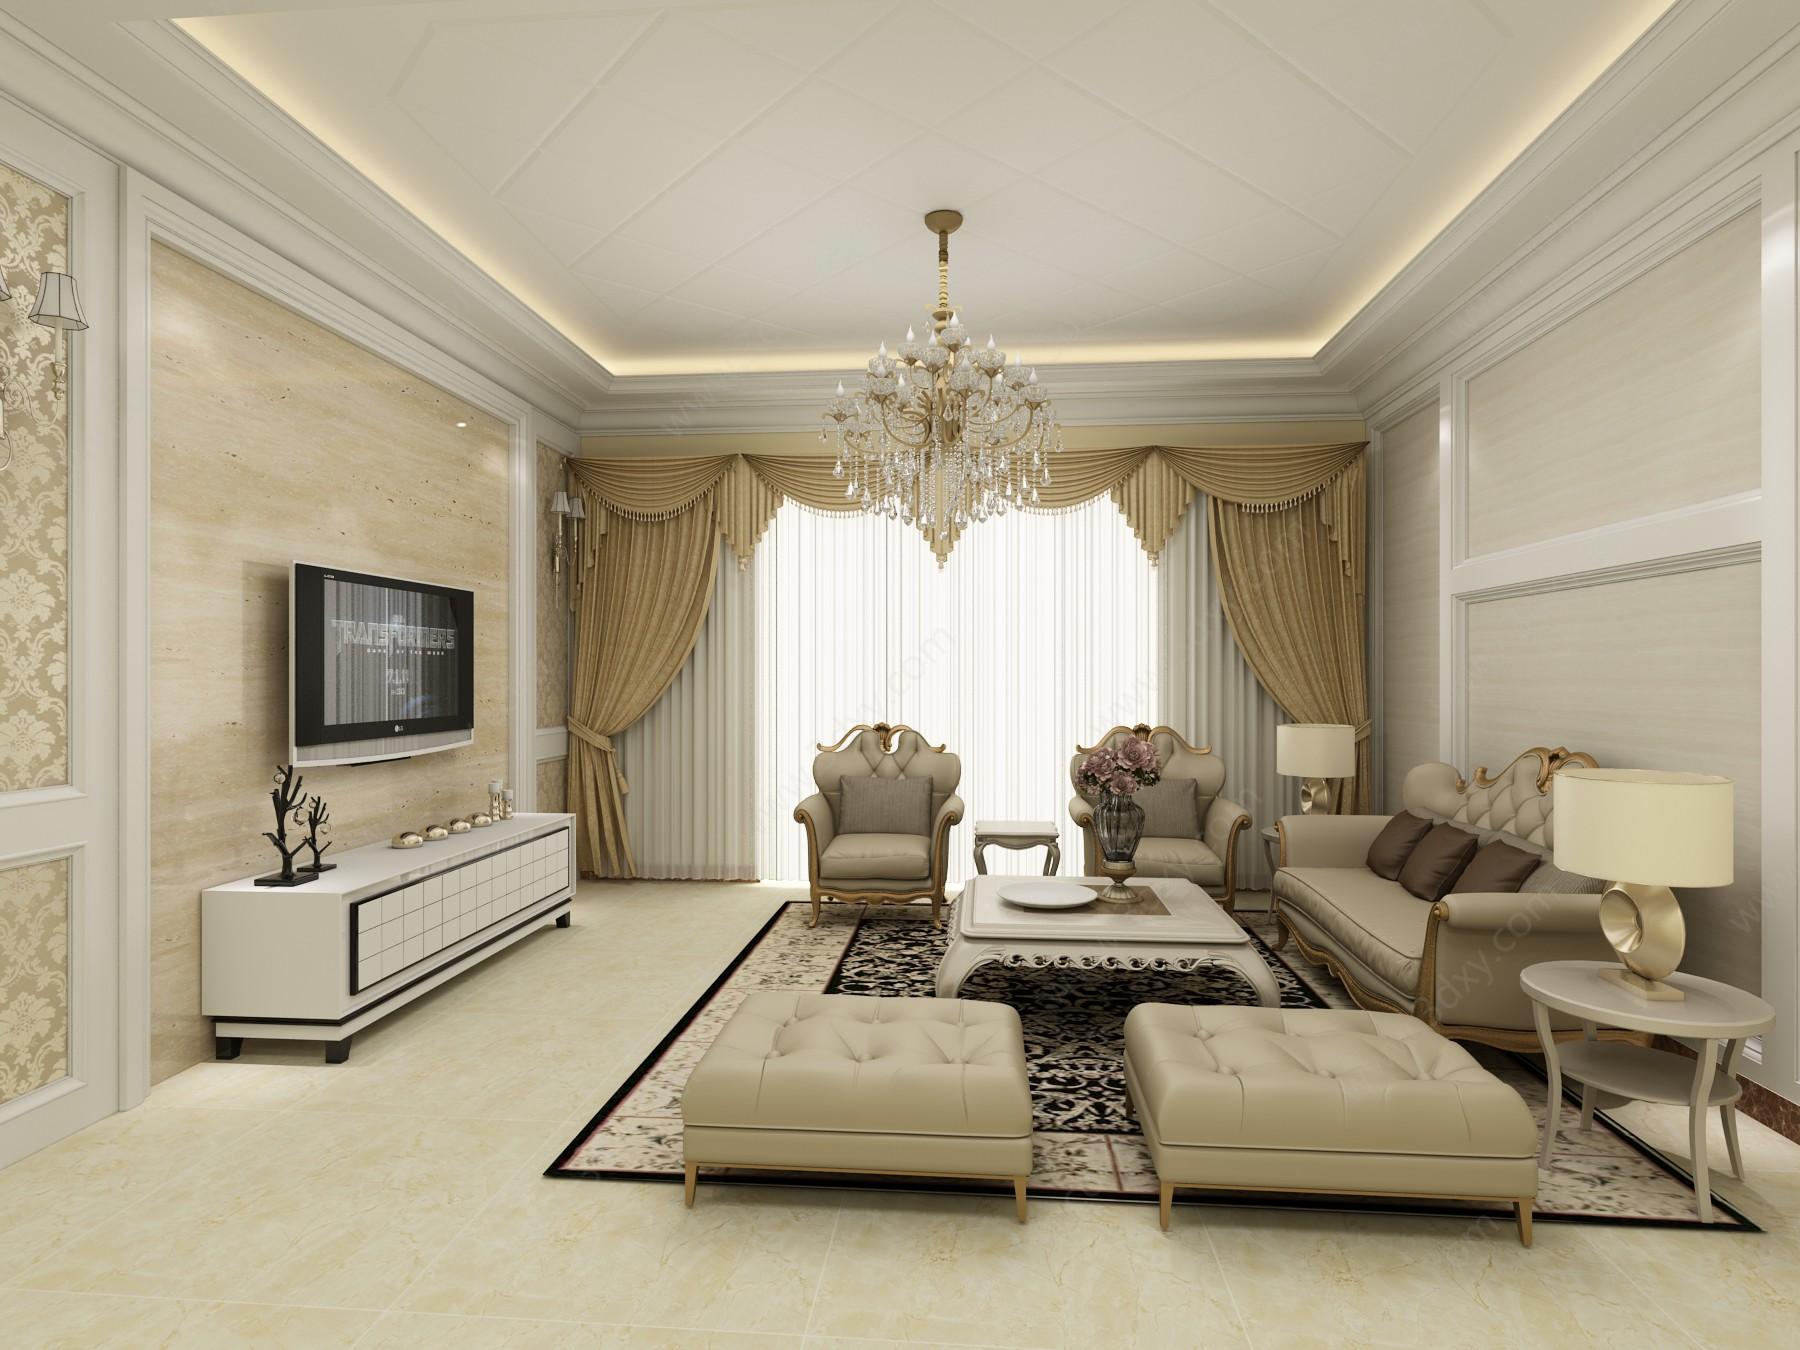 简欧客厅效果图家装模型 关键词:客厅3d模型简欧客厅3d模型沙发组合3d